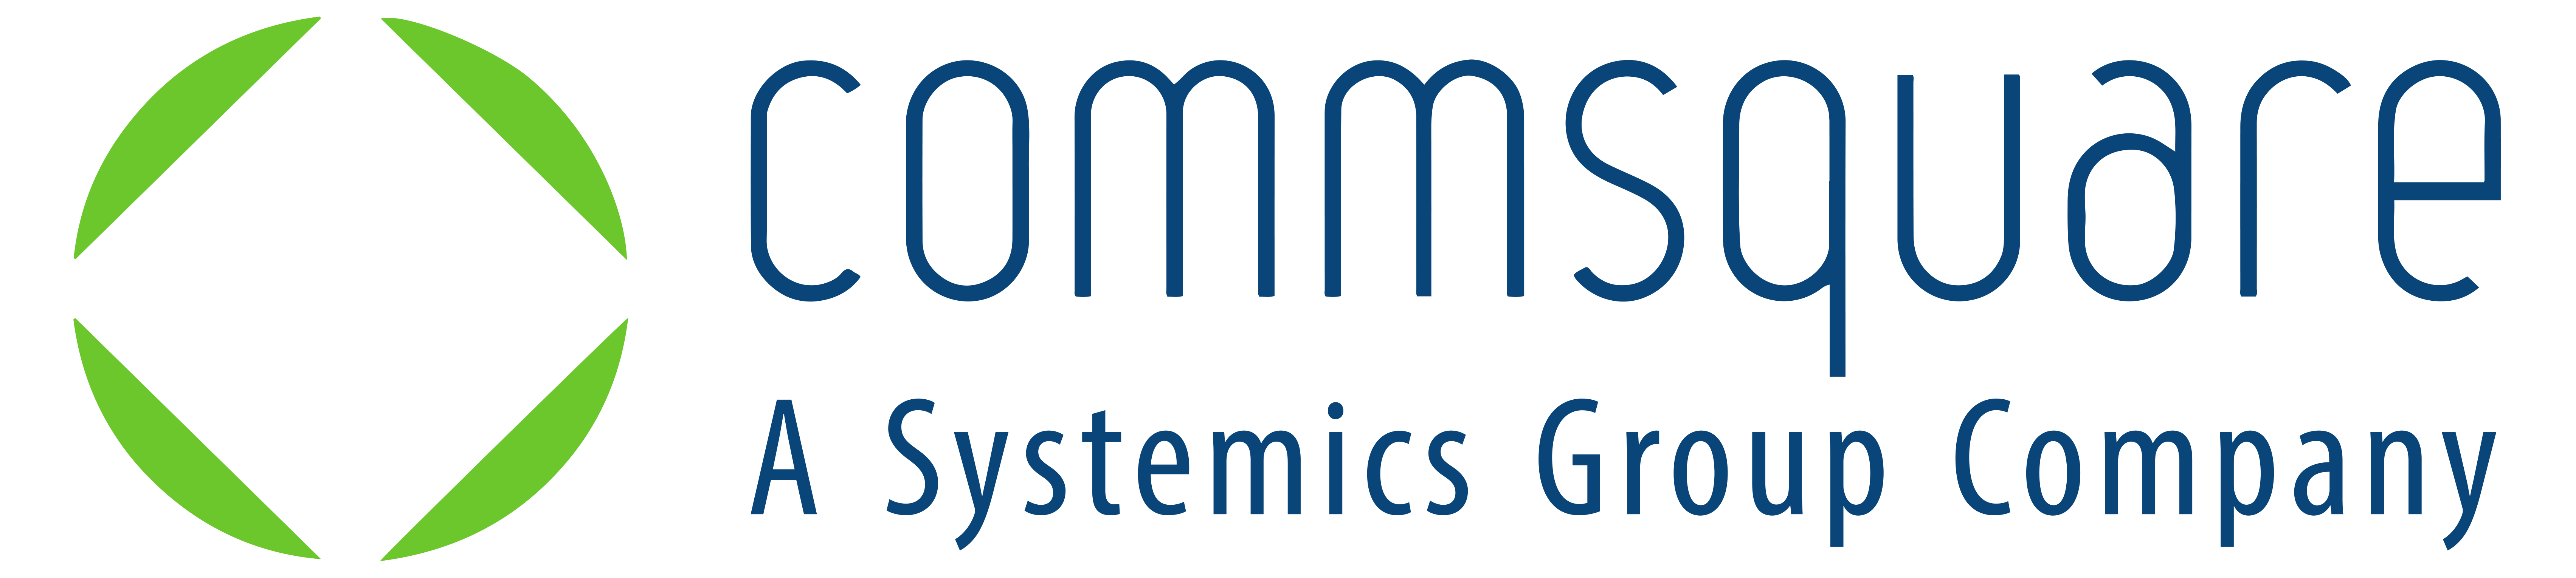 Commsquare_group_logo